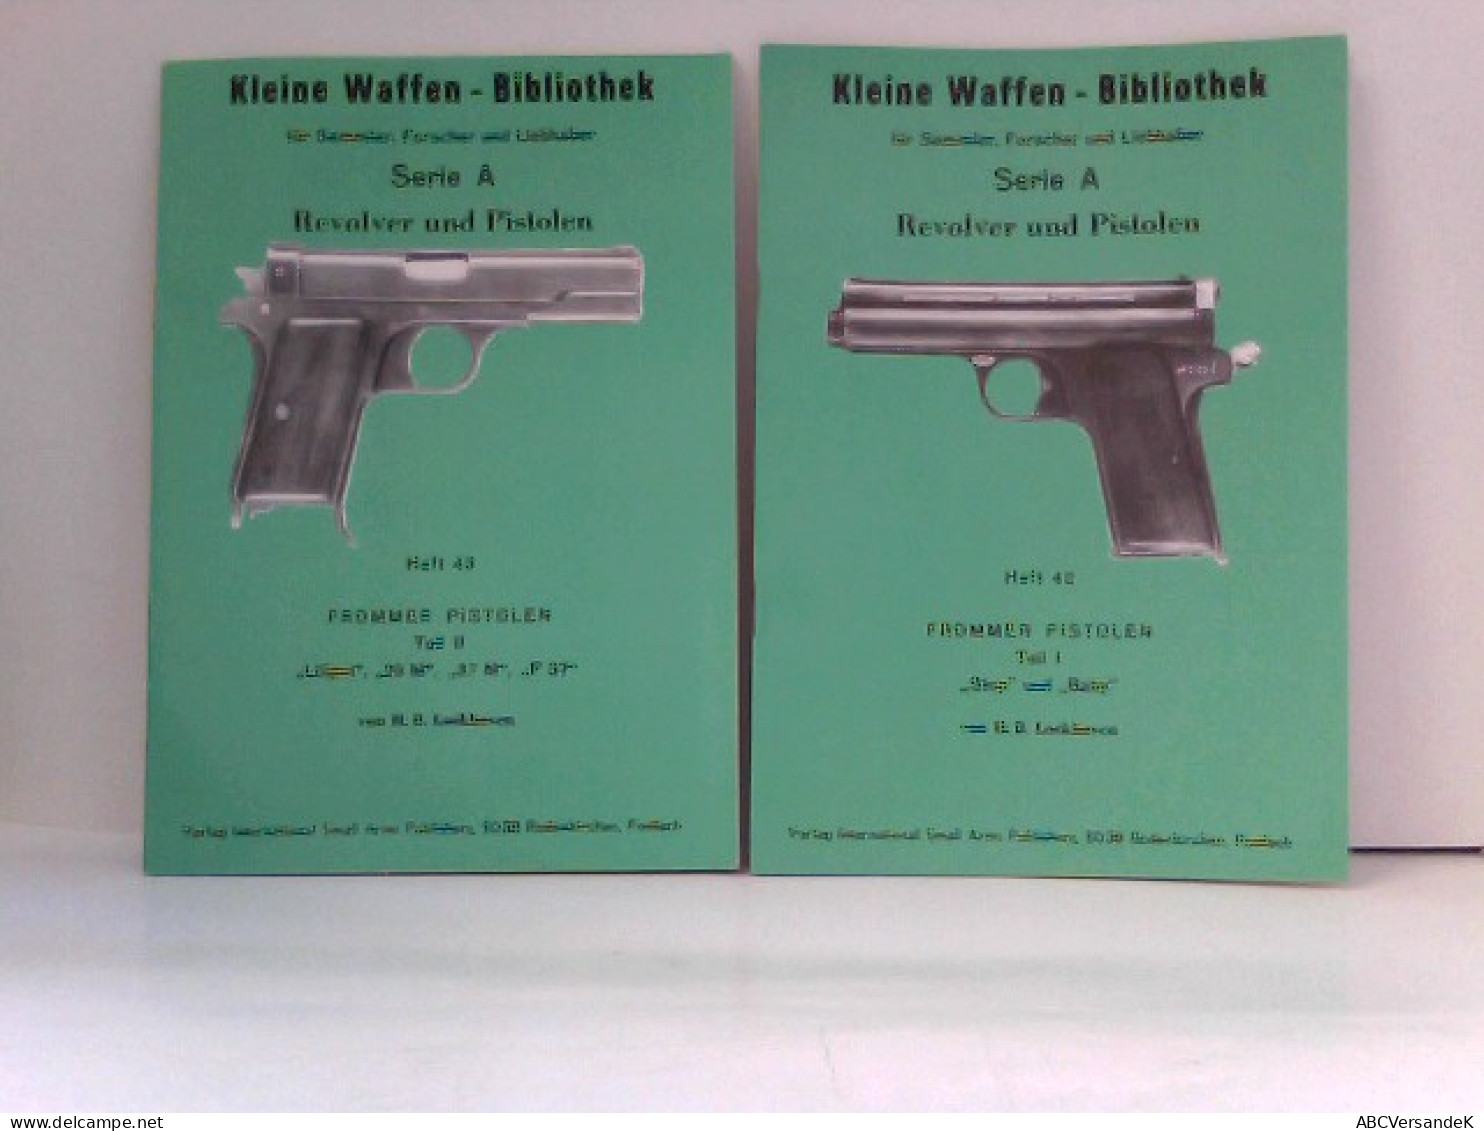 KONVOLUT Frommer Pistolen, Kleine Waffen - Bibliothek Für Sammler, Forscher Und Liebhaber - Heft 42 & Heft 43 - Polizie & Militari